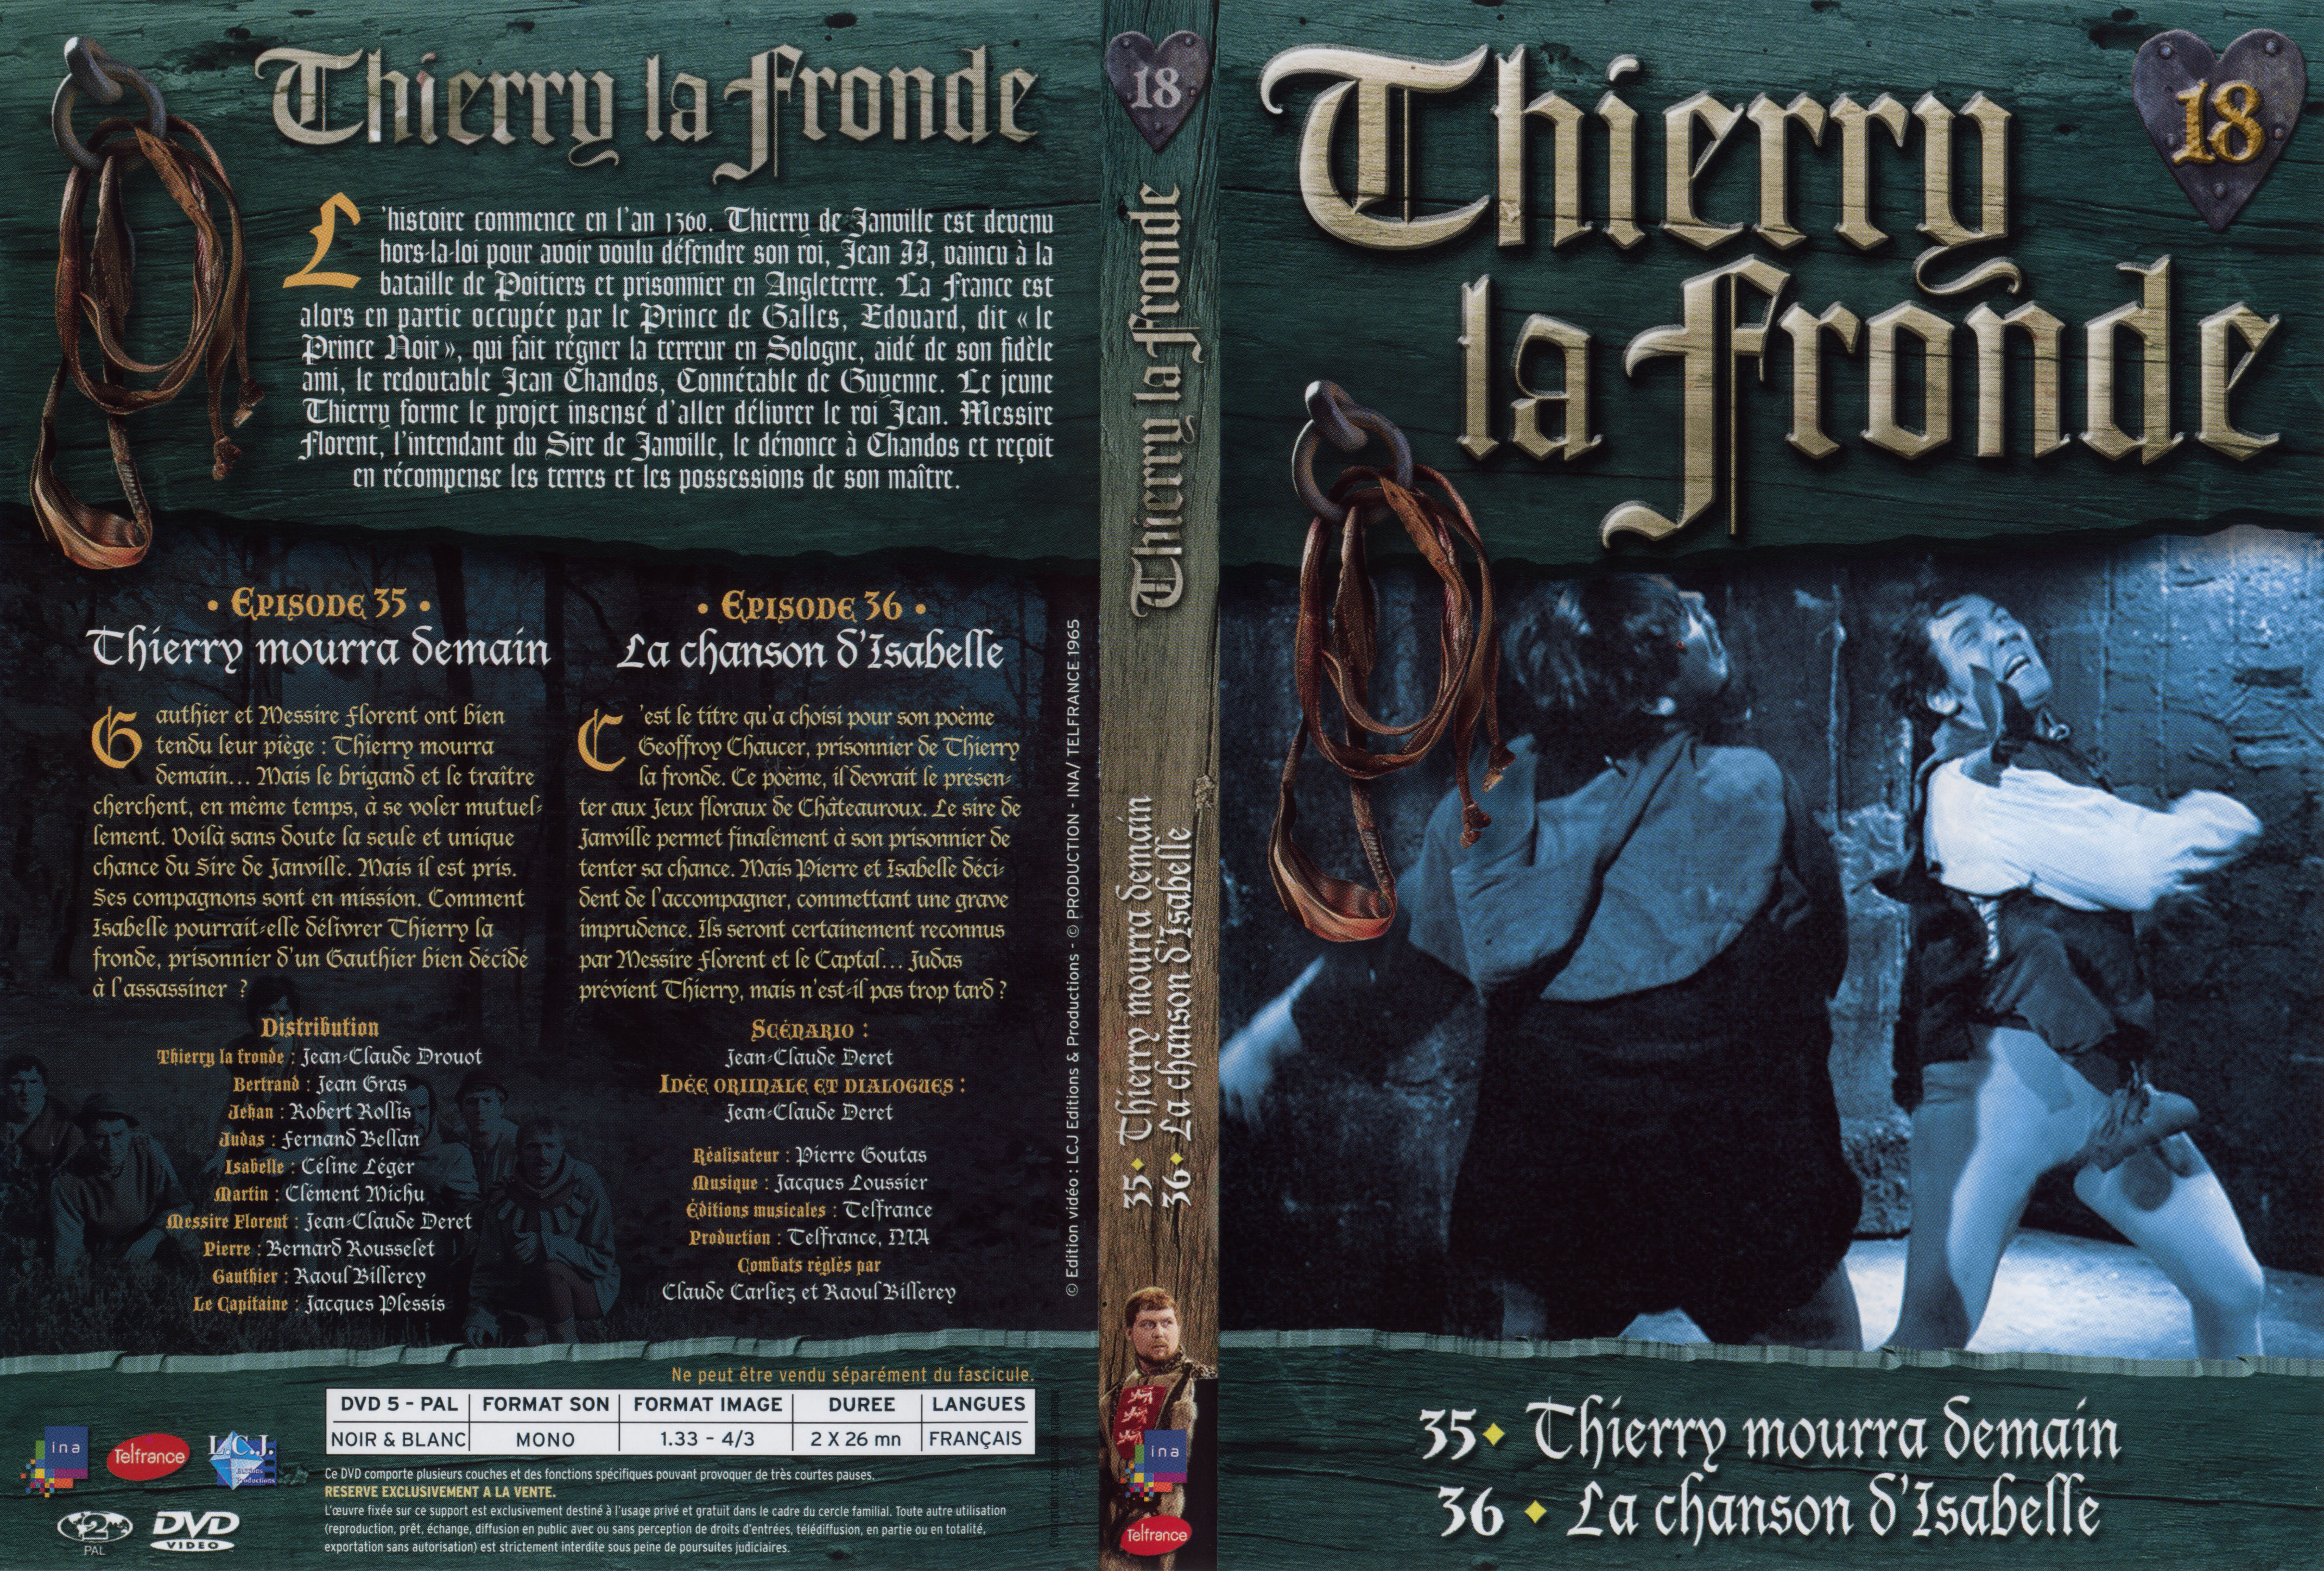 Jaquette DVD Thierry la Fronde vol 18